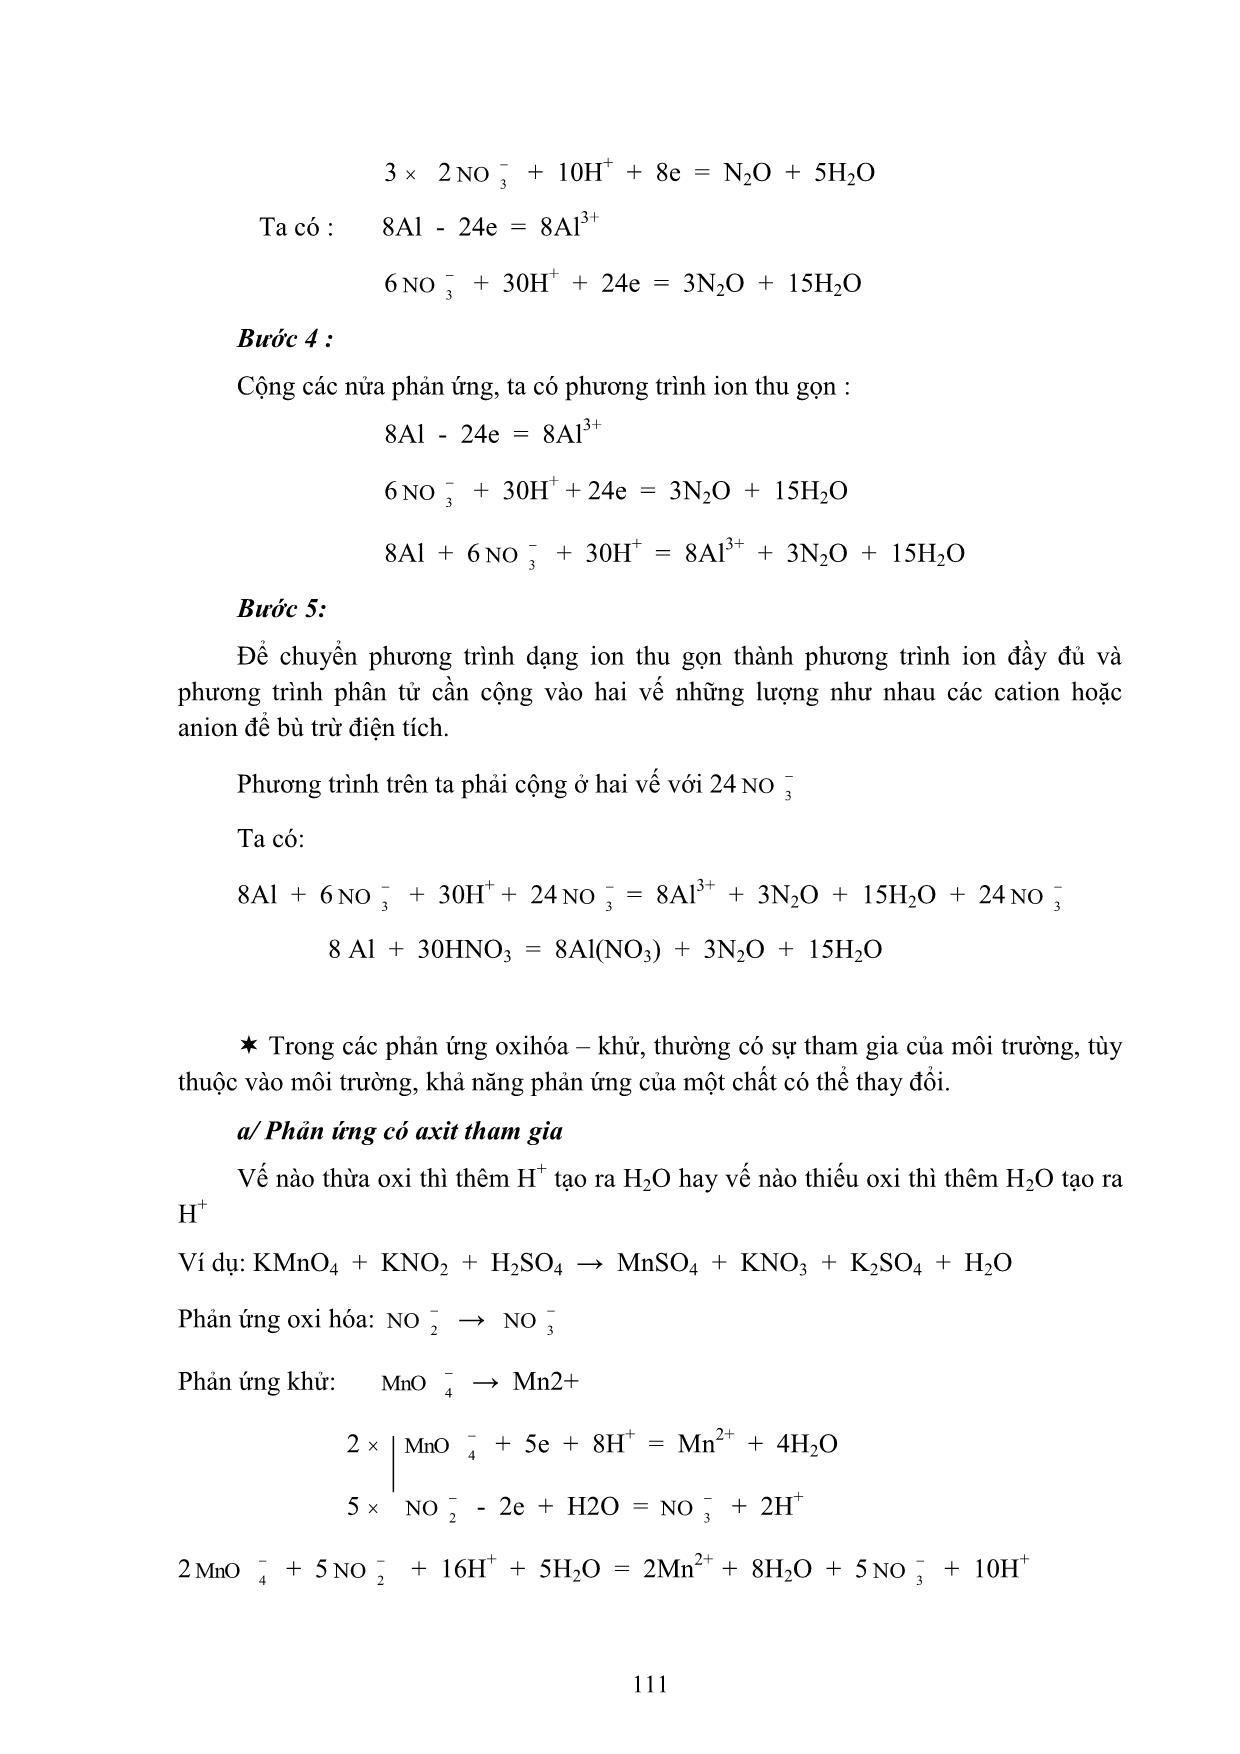 Bài giảng Hóa học đại cương A - Hoàng Hải Hậu (Phần 2) trang 4